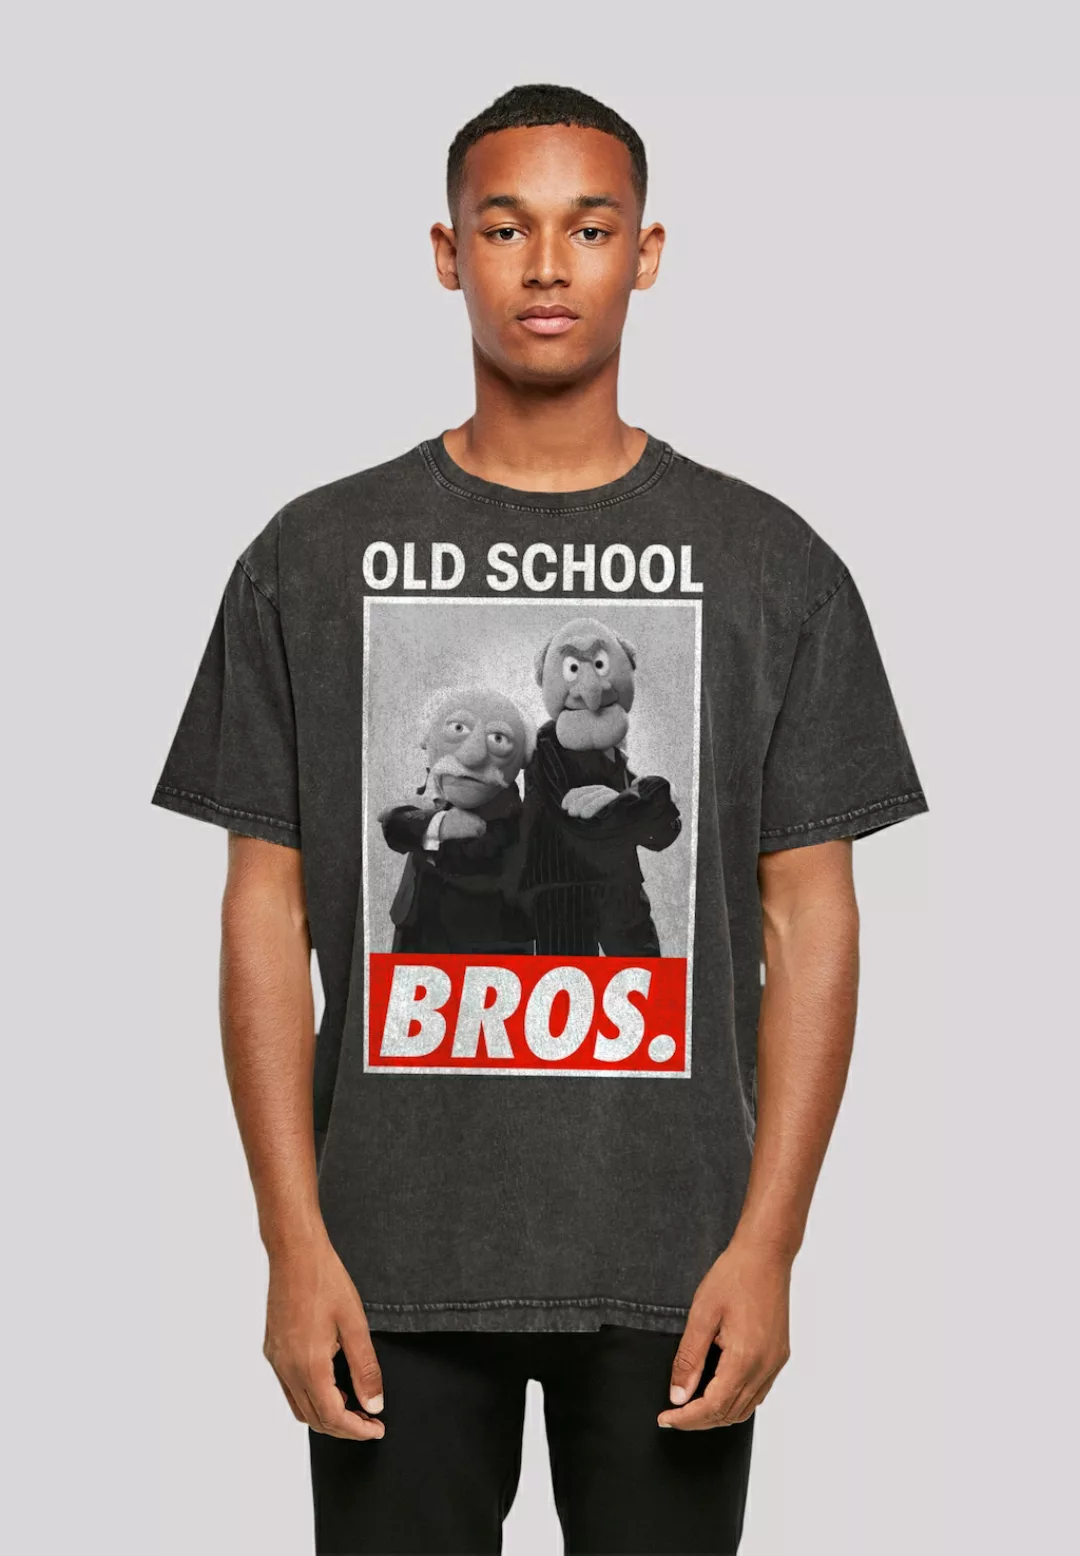 F4NT4STIC T-Shirt "Disney Muppets Old School Bros.", Premium Qualität günstig online kaufen